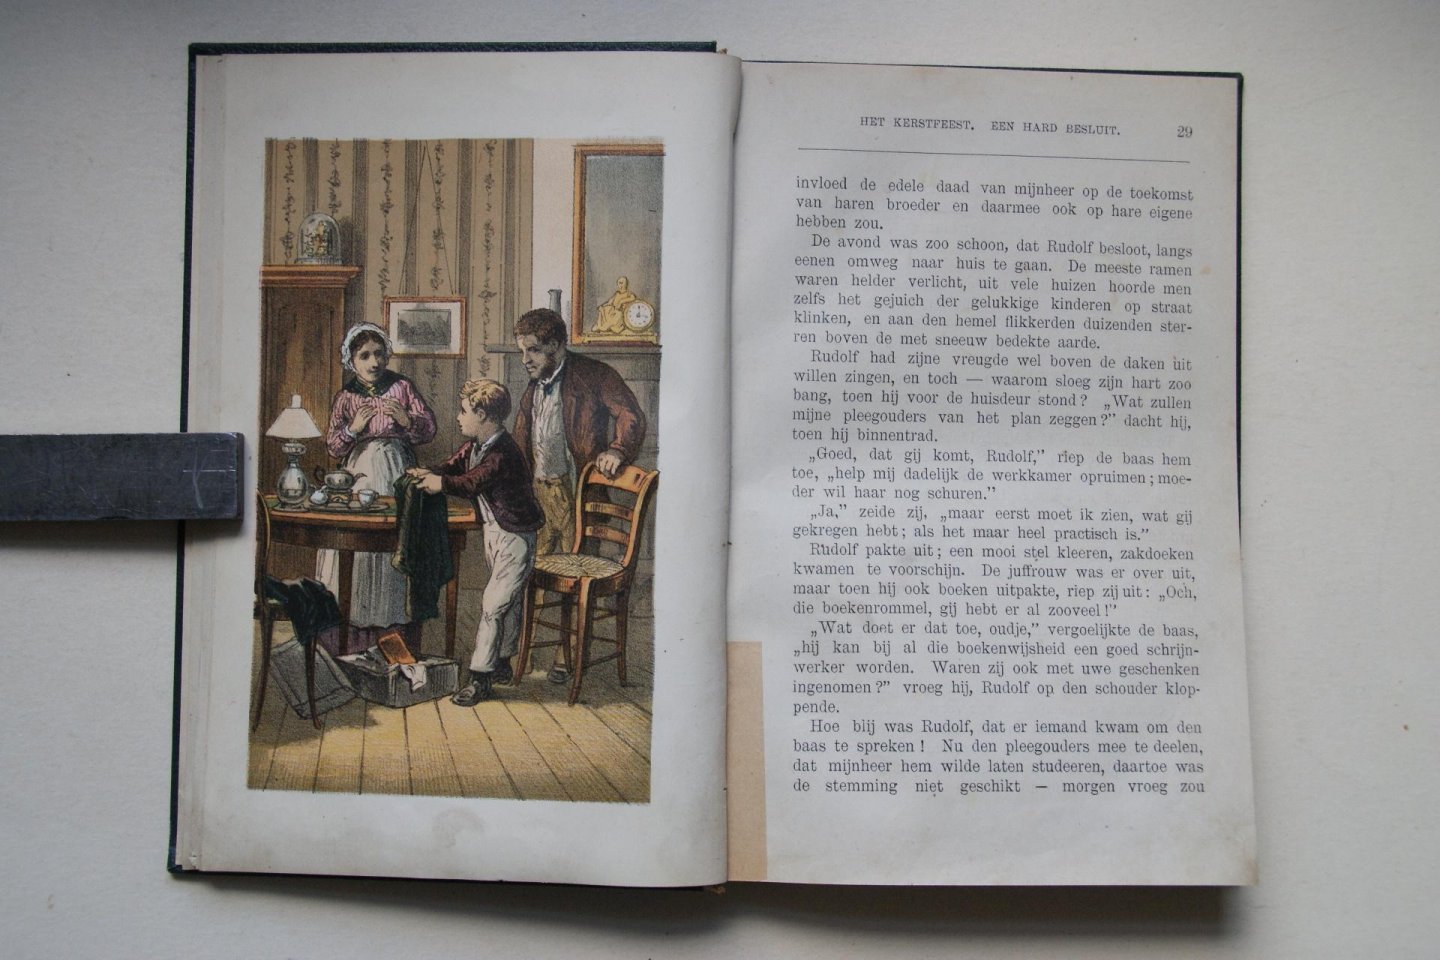 H. Scheltema ; Muller-Portius, A. - compleet met 4 litho's: de Twee Weezen een verhaal voor jonge meisjes naar het Duits van A. Muller-Portius